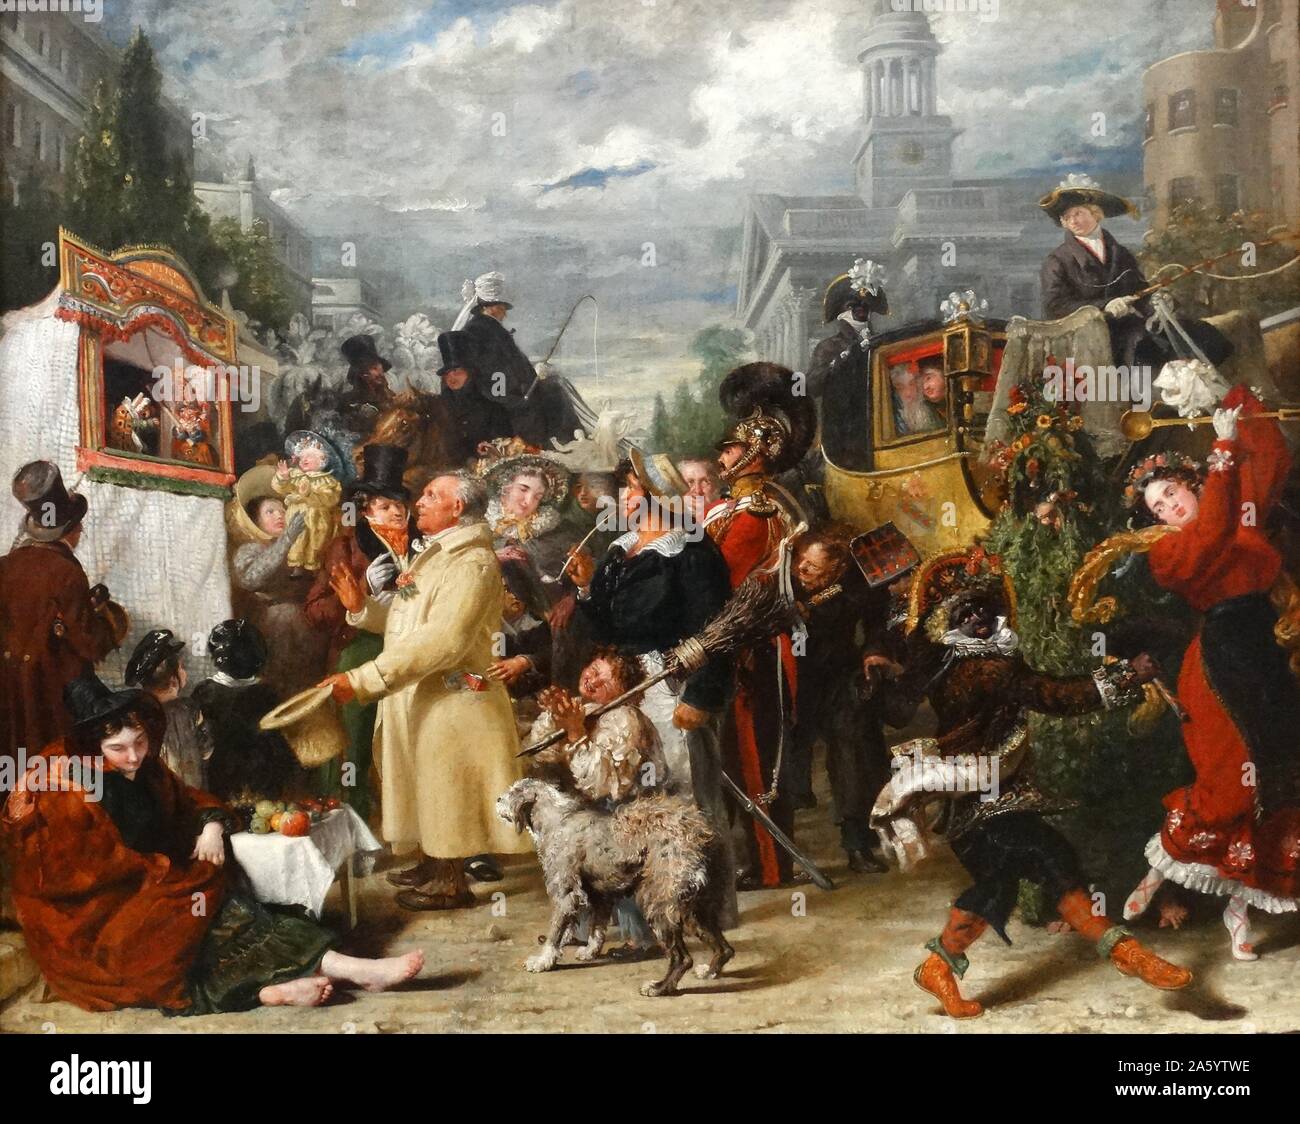 Benjamin Robert Haydon (1786-1846) Punch oder Mai 1829. Öl auf Leinwand. Ein englischer Maler, spezialisiert auf Grand historische Bilder. Stockfoto